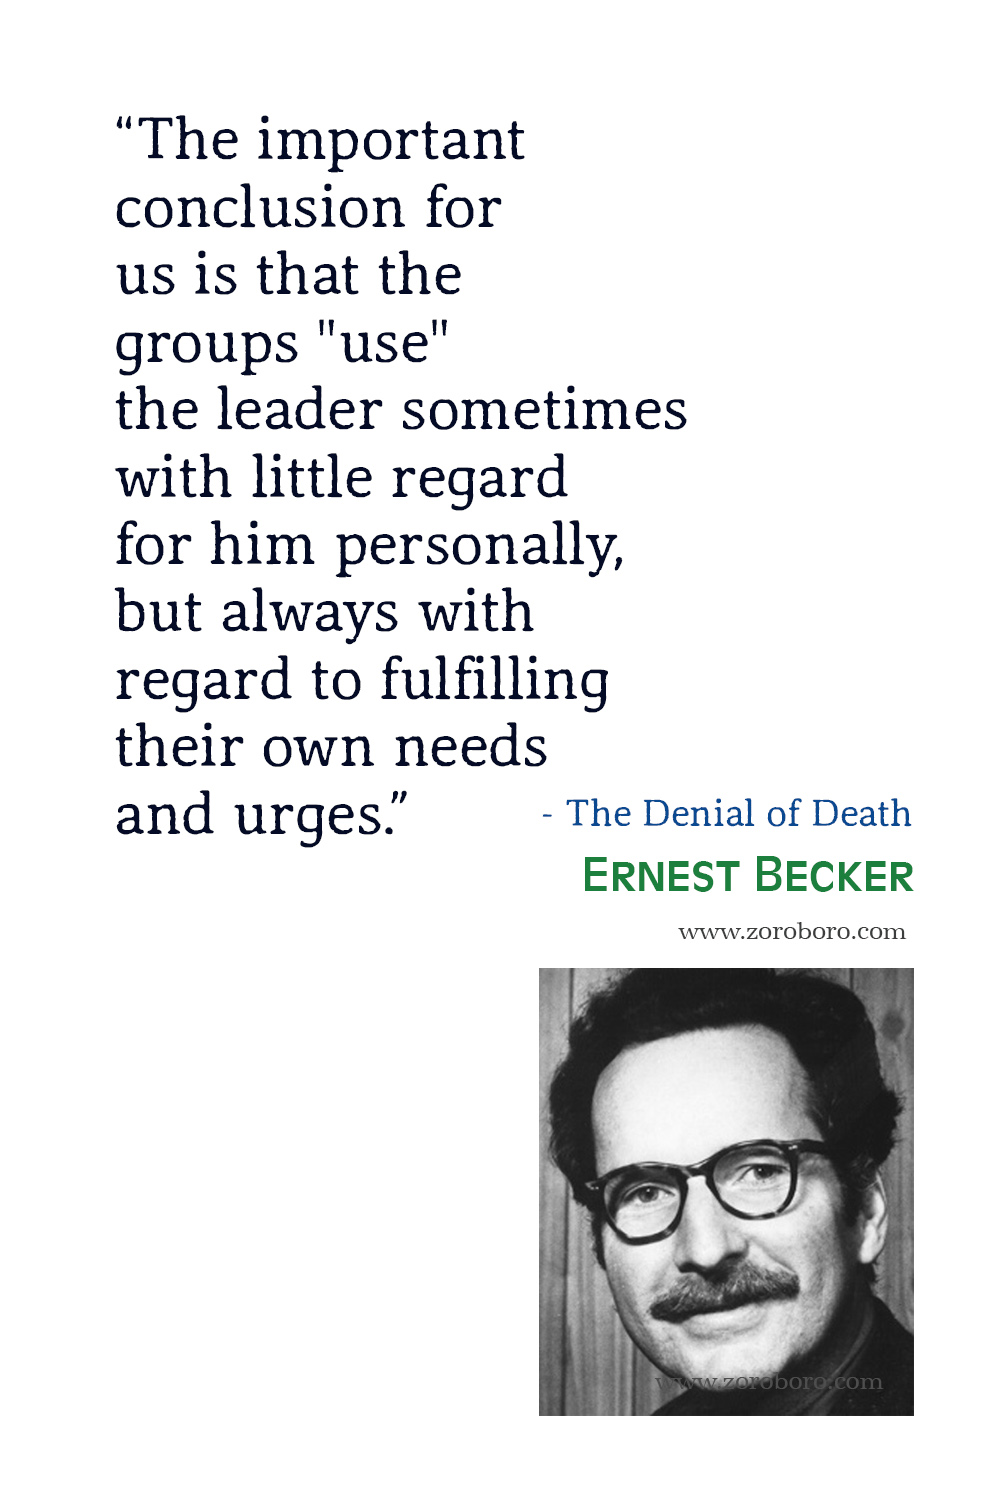 Ernest Becker Quotes, Ernest Becker, The Denial of Death, Ernest Becker Philosophy, Ernest Becker Books Quotes, Ernest Becker.